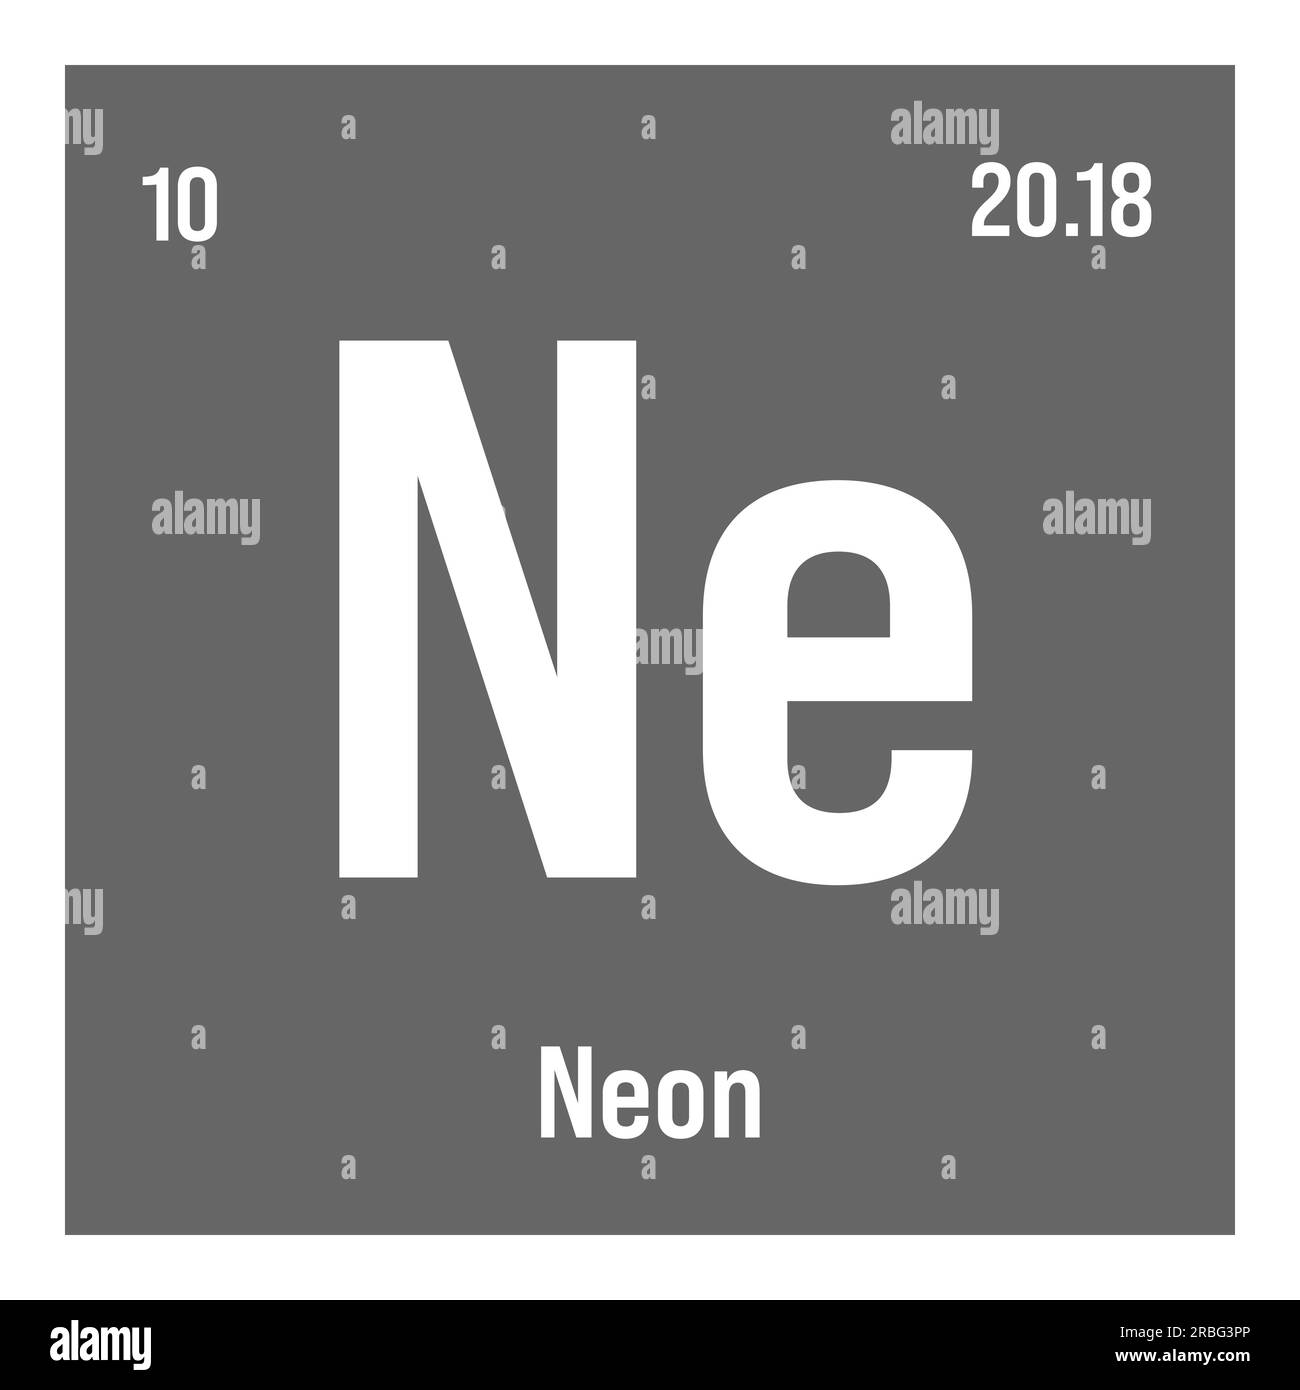 Neon, NE, elemento tavola periodico con nome, simbolo, numero atomico e peso. Gas inerte con vari usi industriali, come nell'illuminazione, nei laser e come gas di riempimento in certi tipi di isolamento. Illustrazione Vettoriale